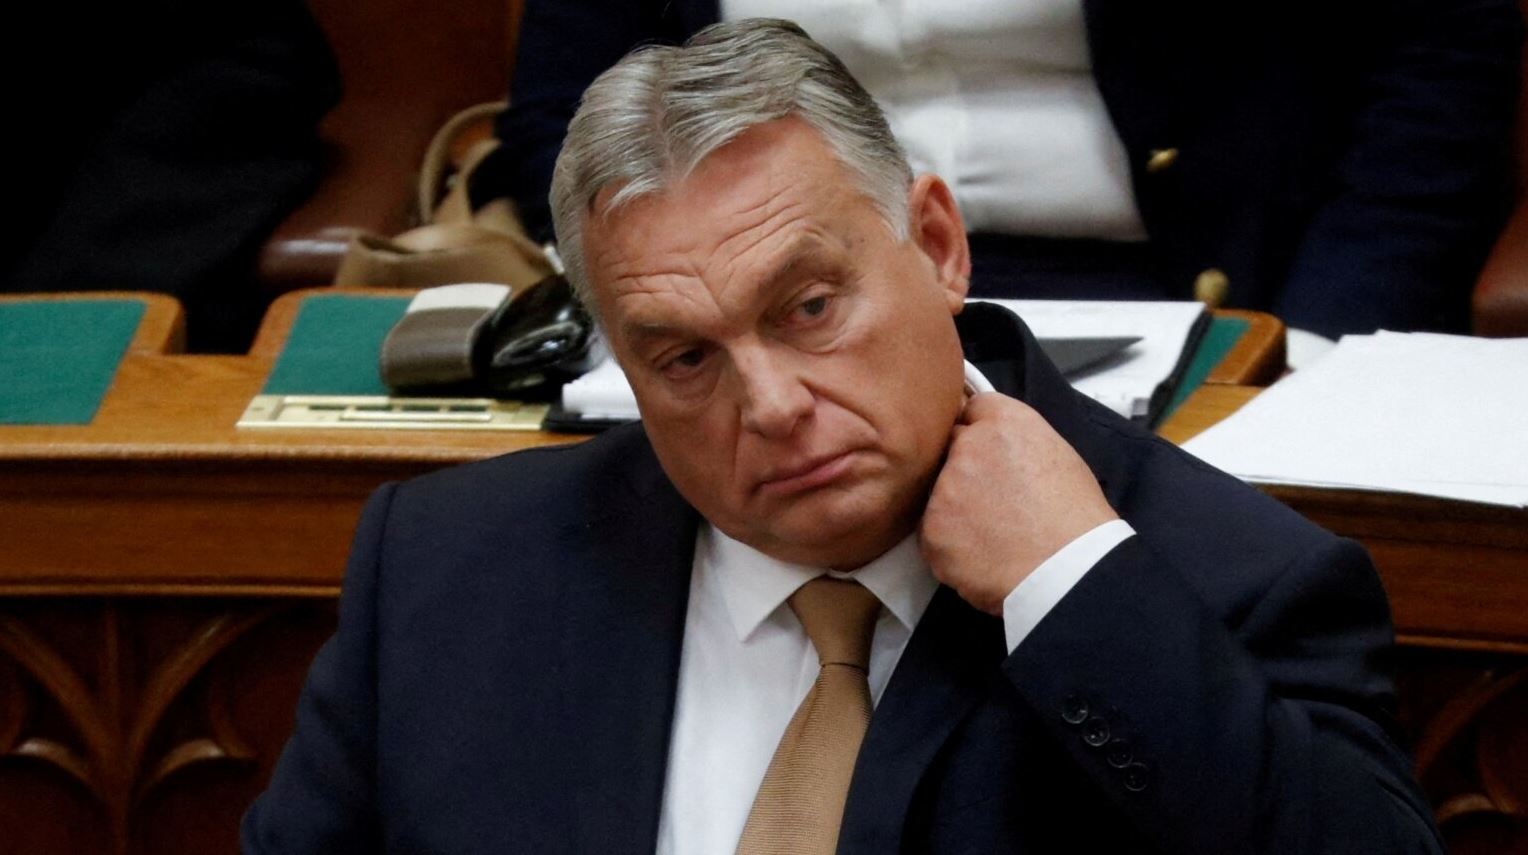 Kryeministri i Hungarisë, Viktor Orban